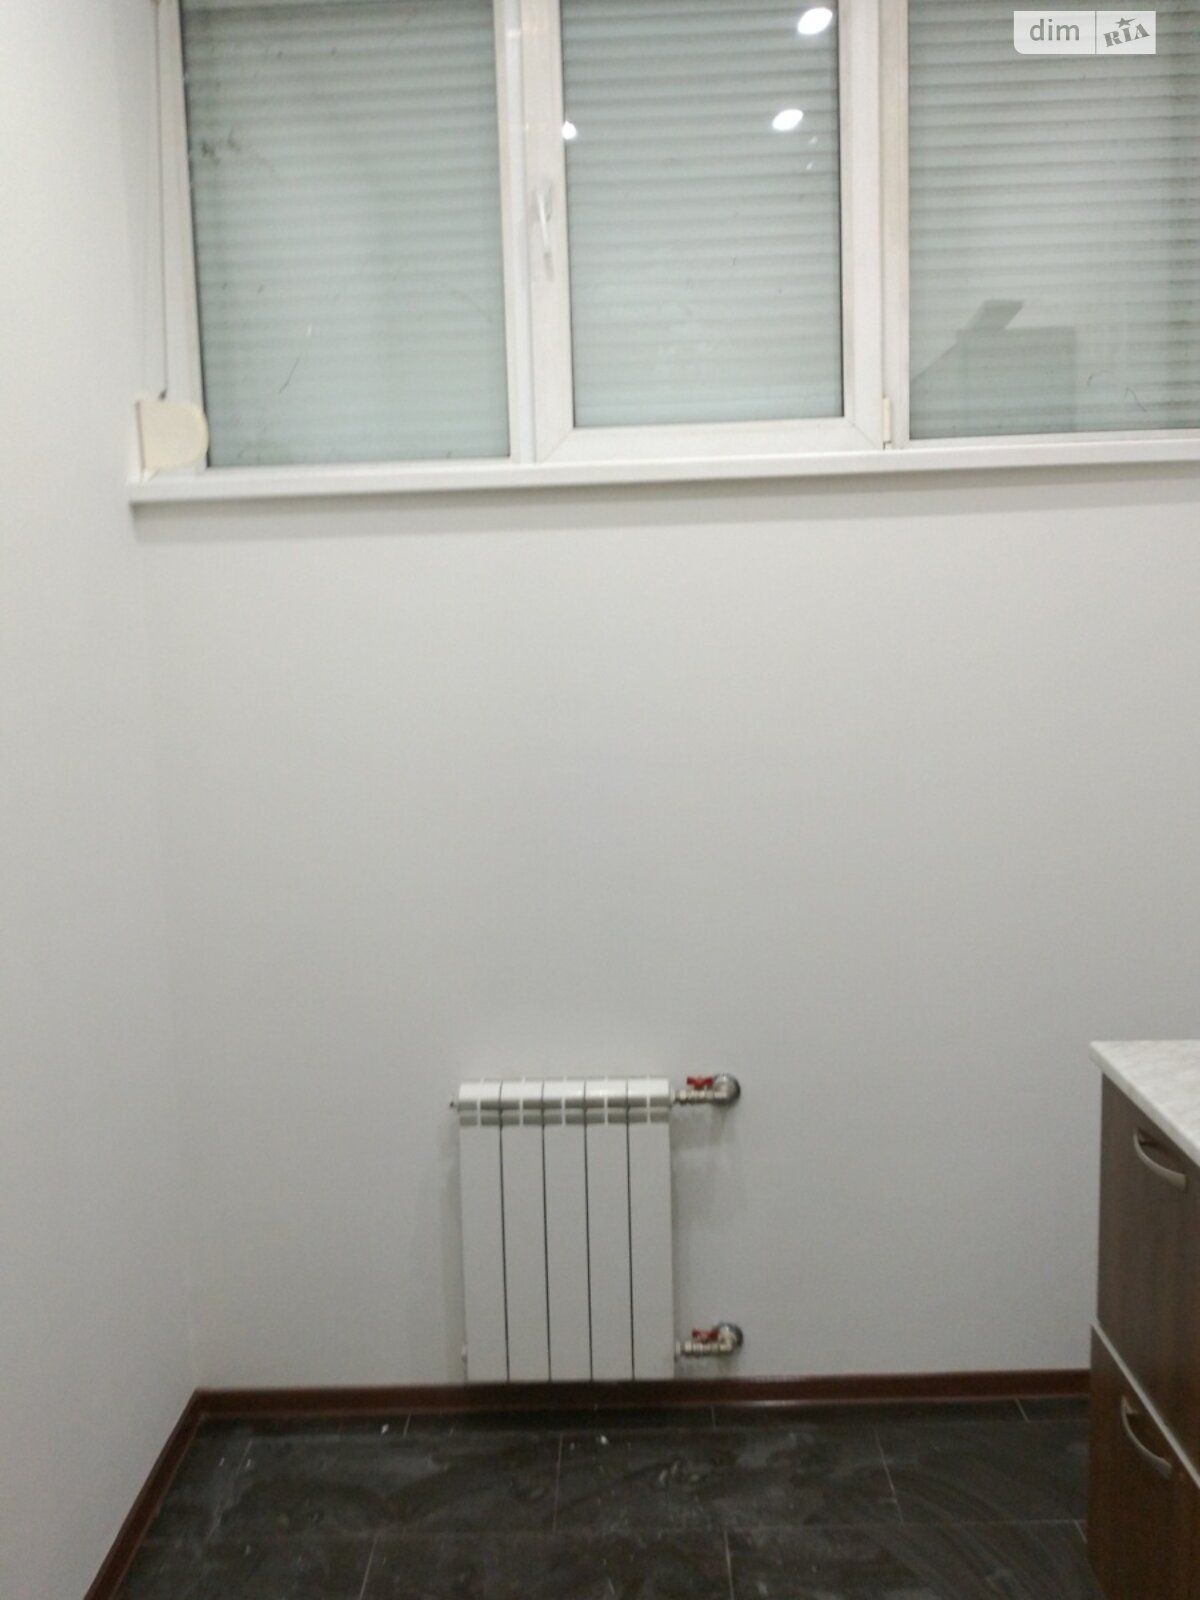 Аренда офисного помещения в Запорожье, Гагарина улица, помещений - 2, этаж - 1 фото 1